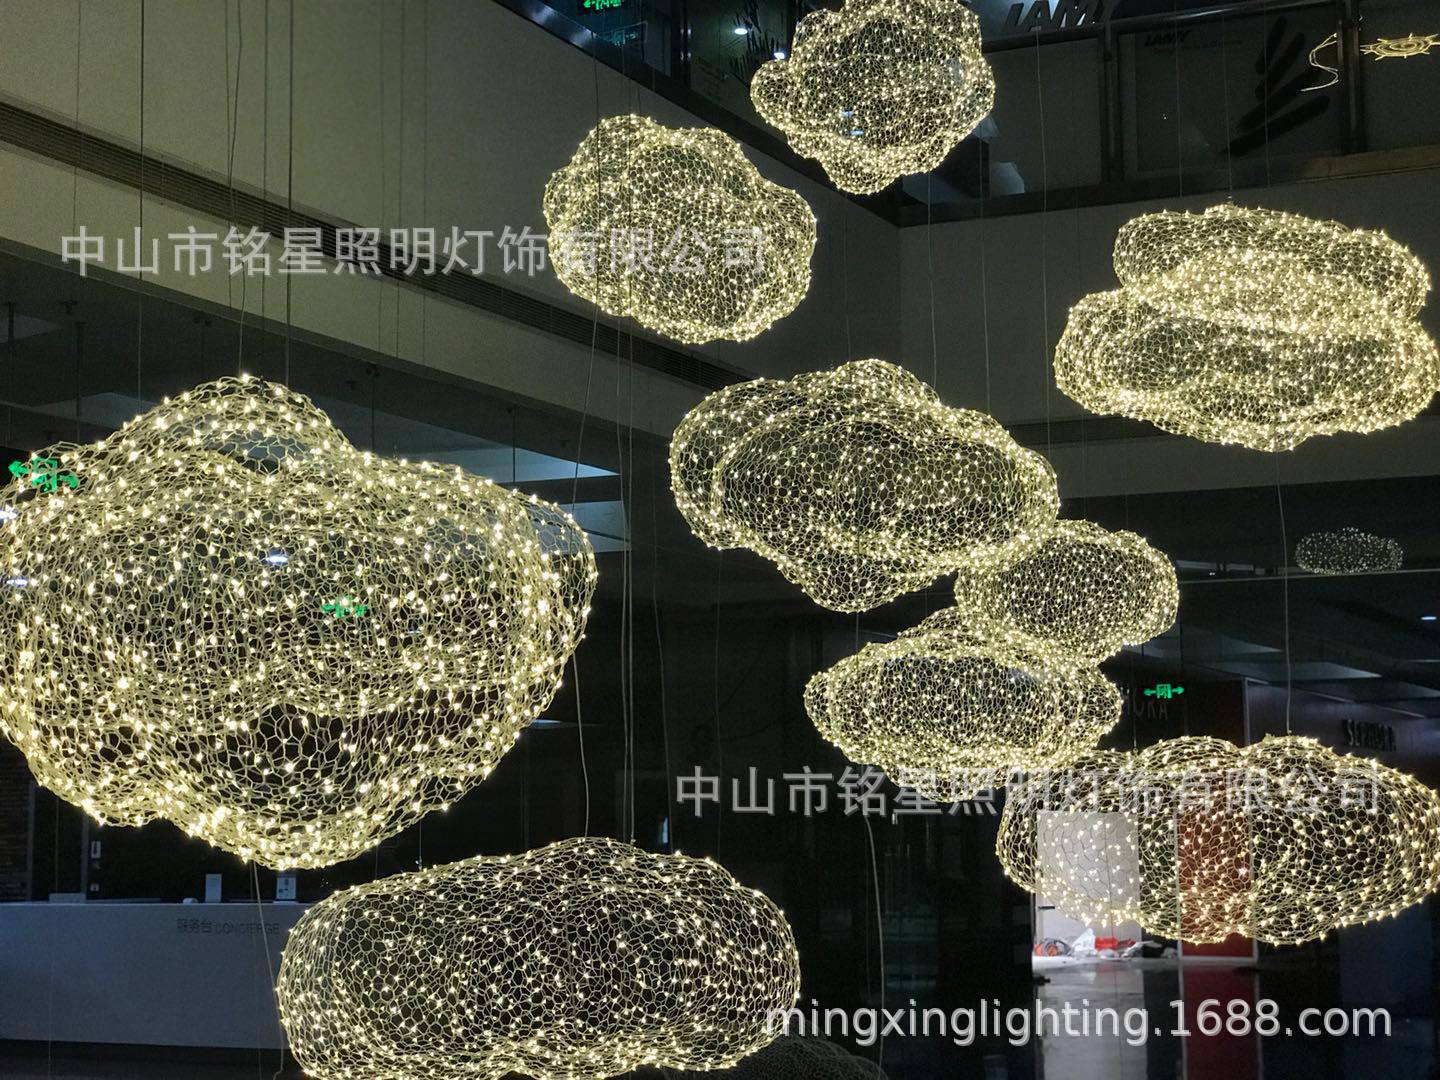 中国供应商铭星照明灯饰有限公司全新LED云朵满天星专业生产厂家示例图1